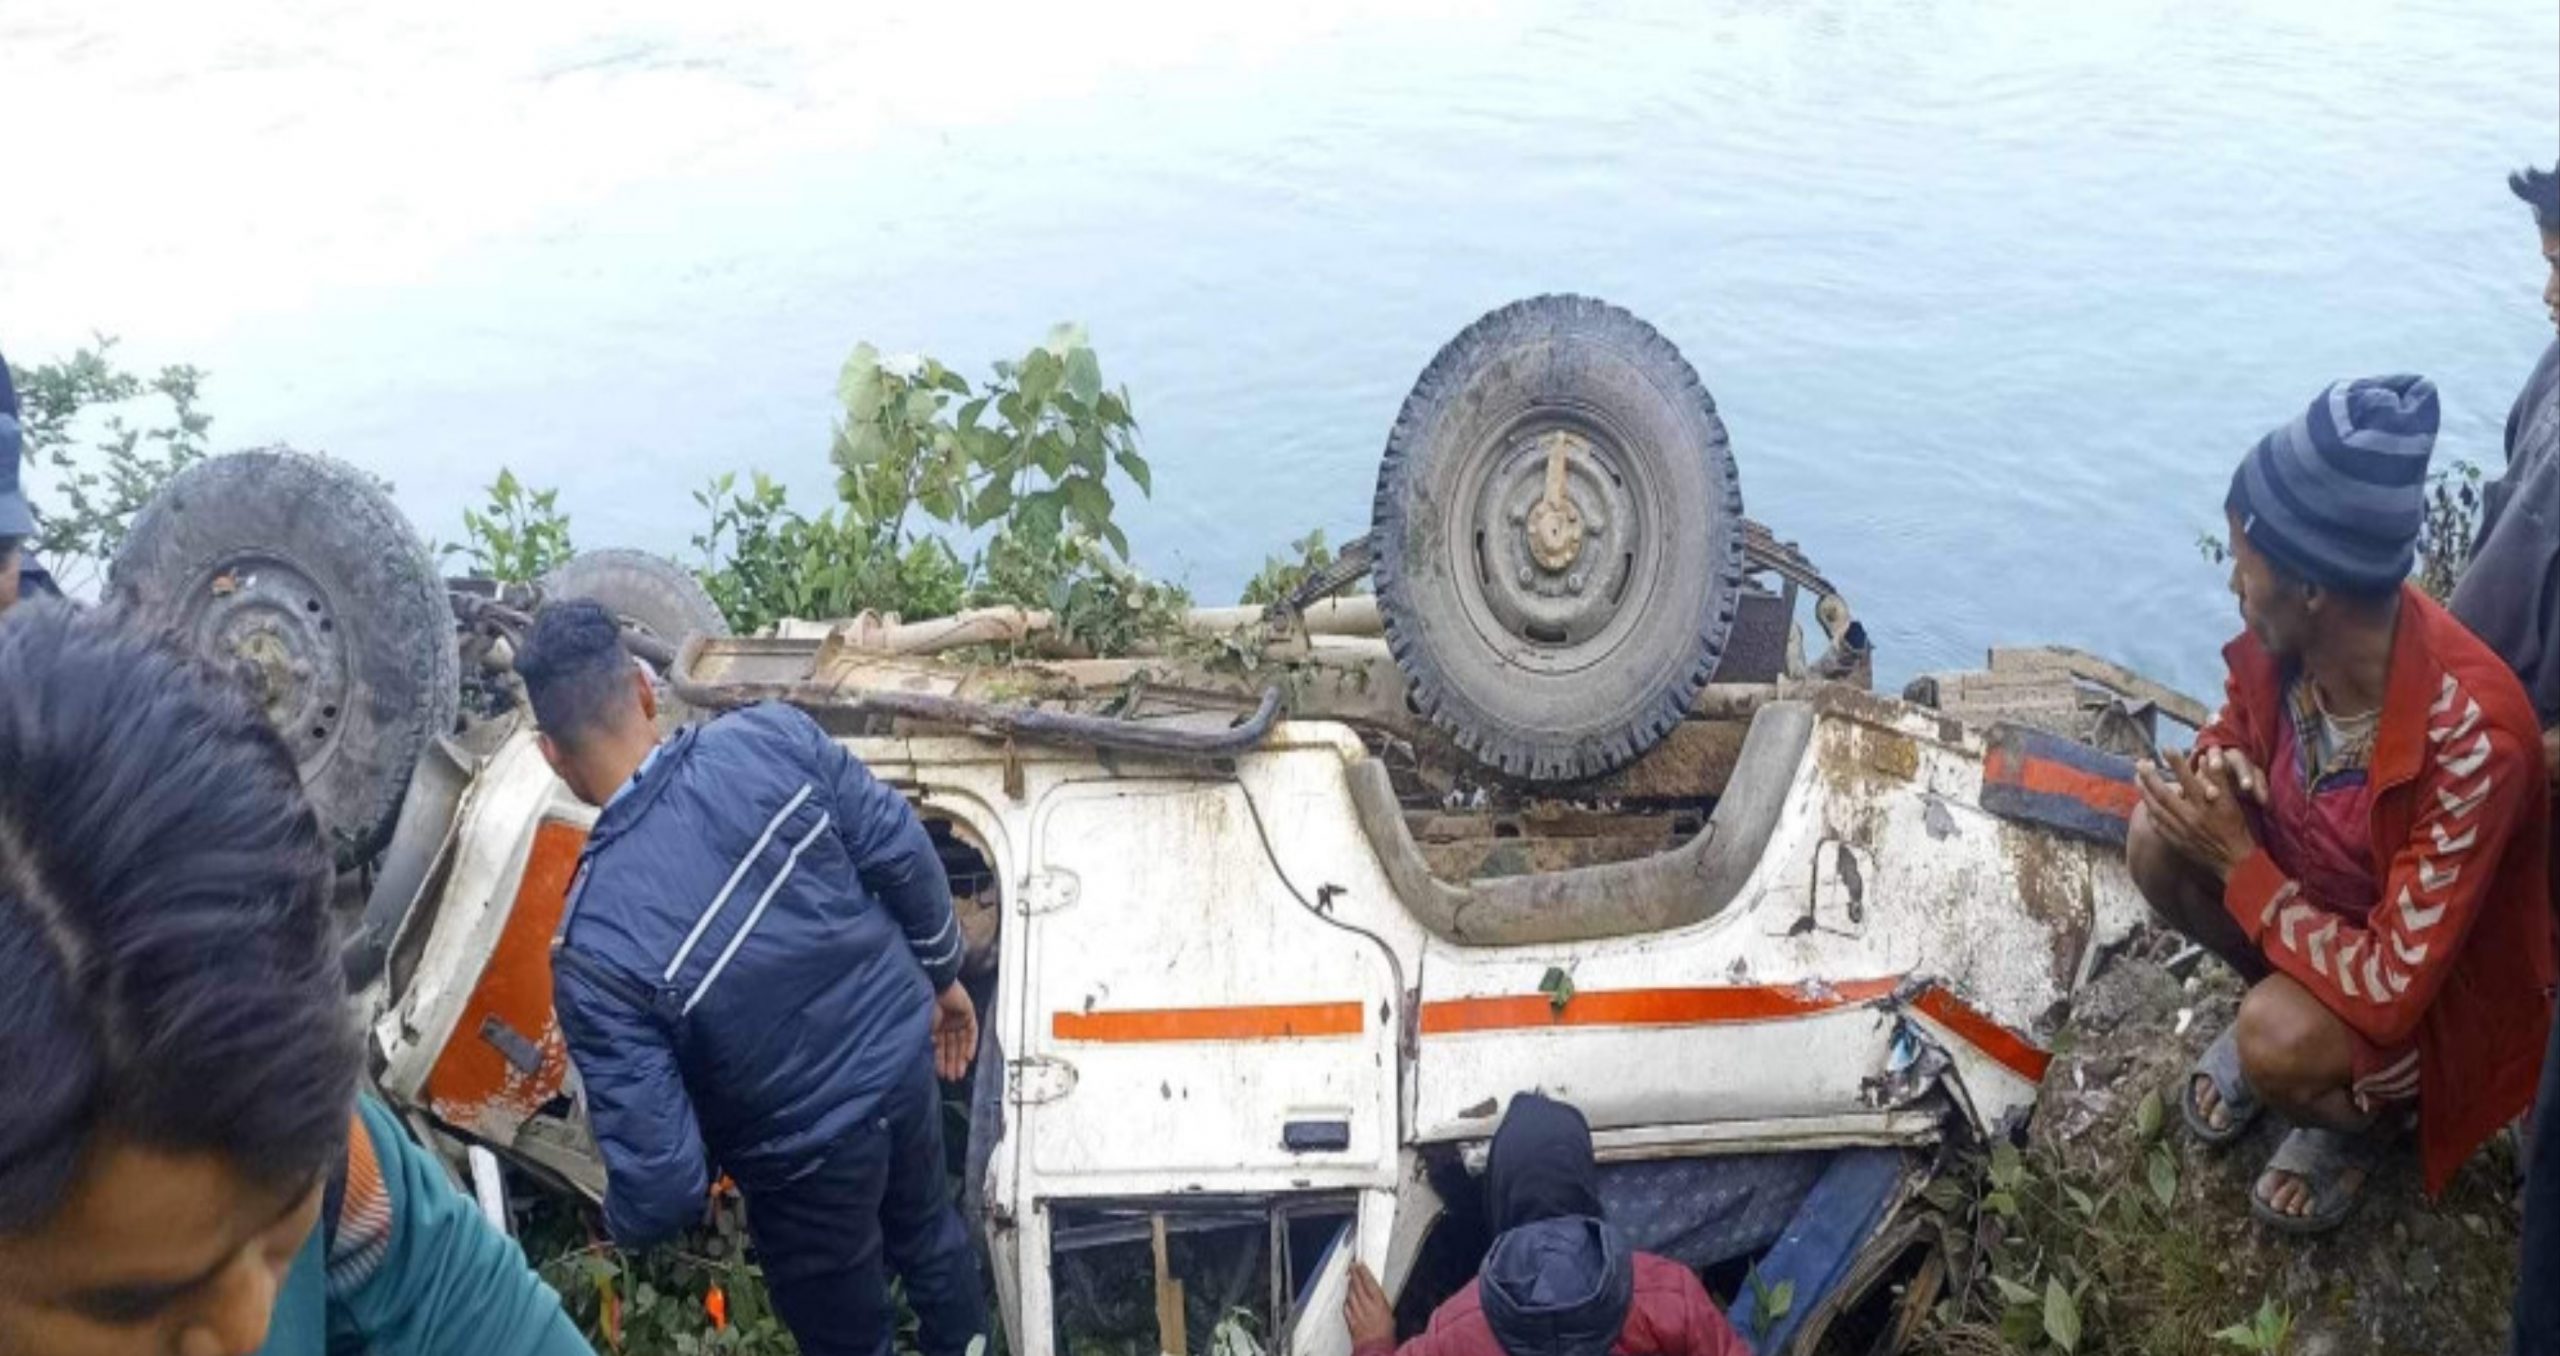 Rukum West Jeep accident update: one injured dies